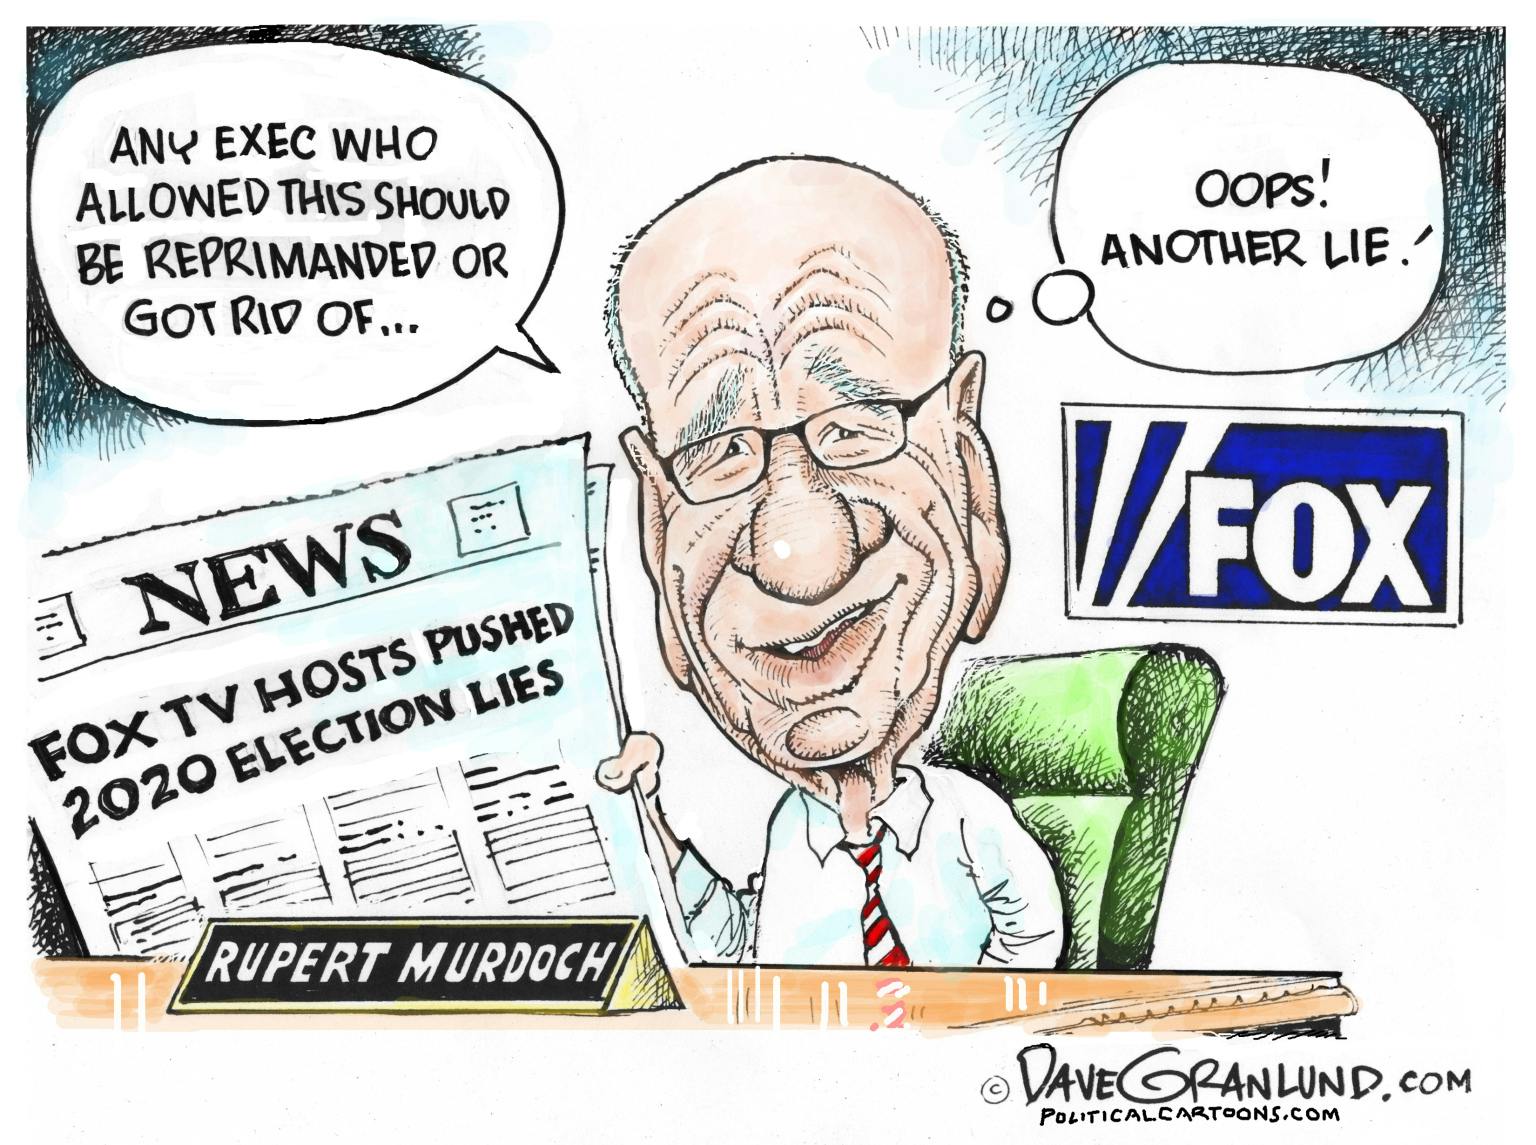 Editorial cartoon: Another lie from Fox News